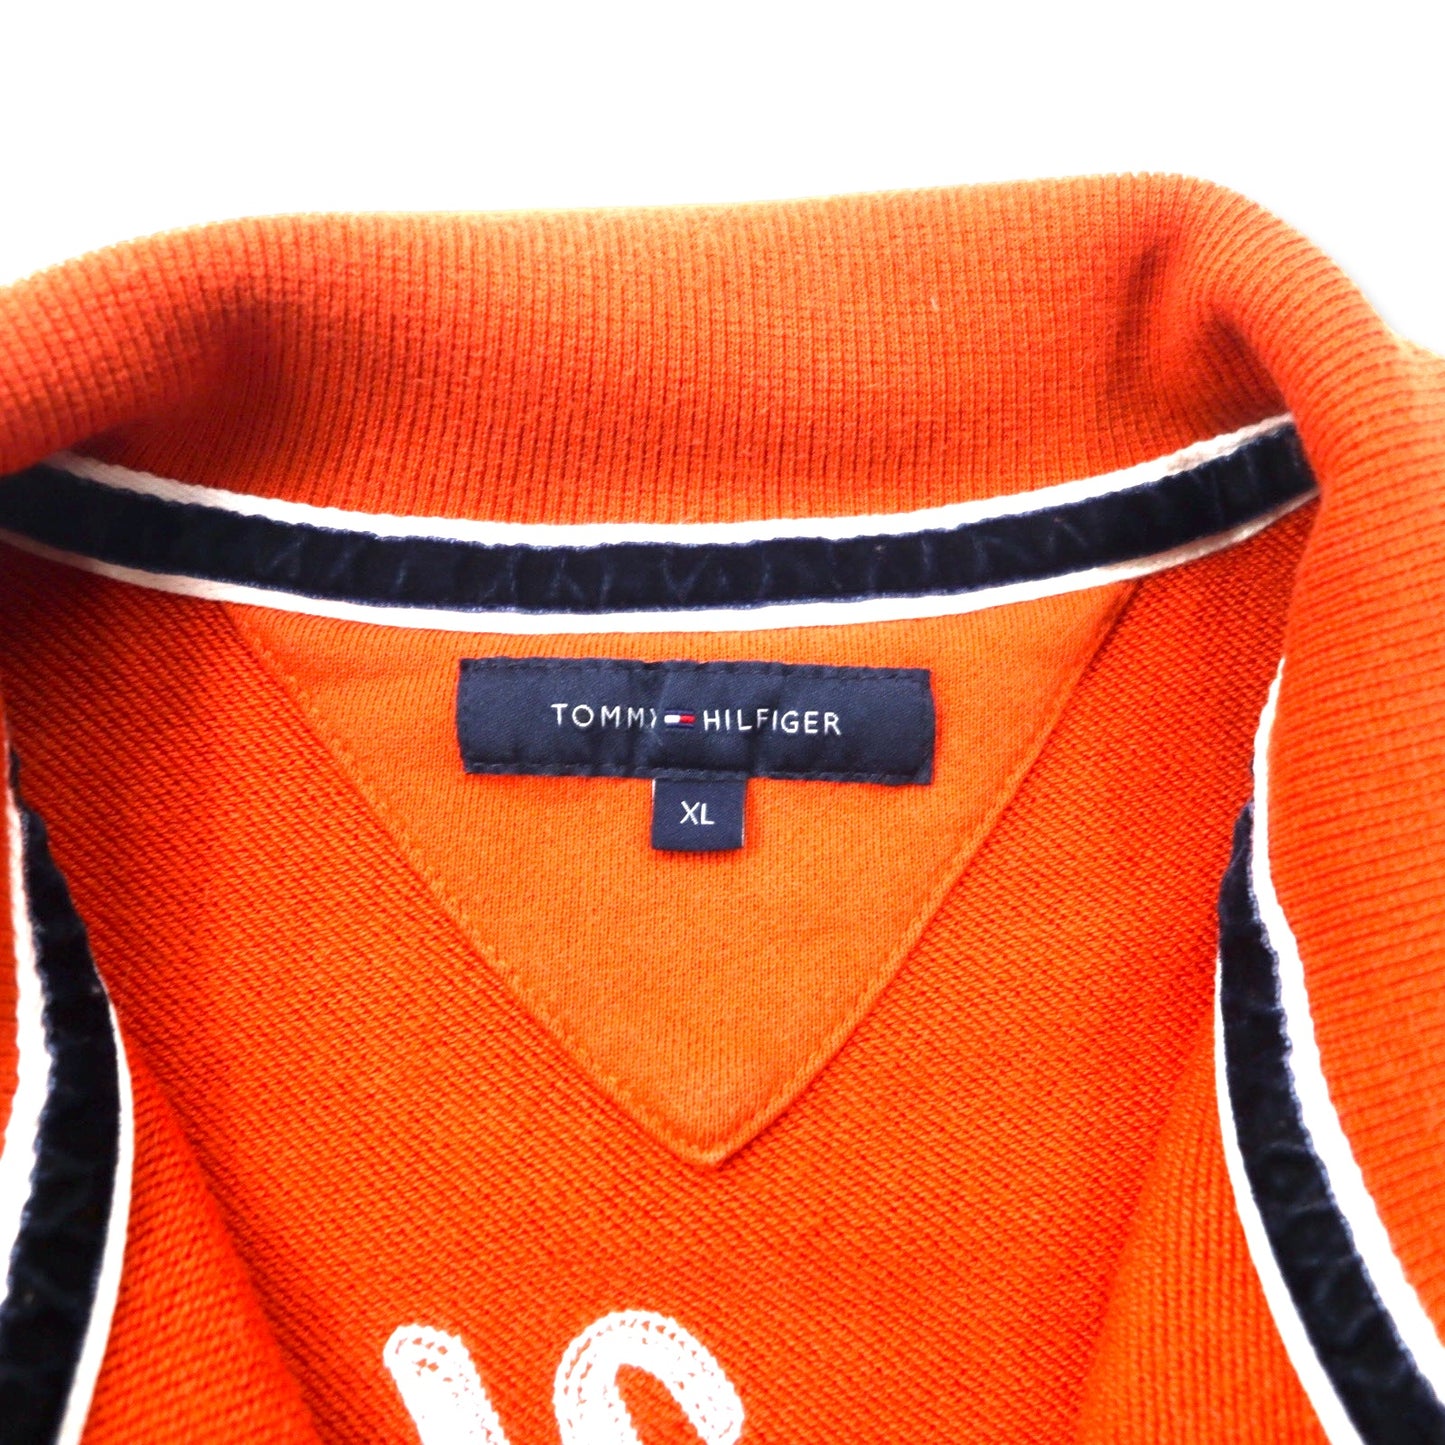 TOMMY HILFIGER トラックジャケット ジャージ XL オレンジ コットン WEST HIGH CHAMPIONS バック刺繍